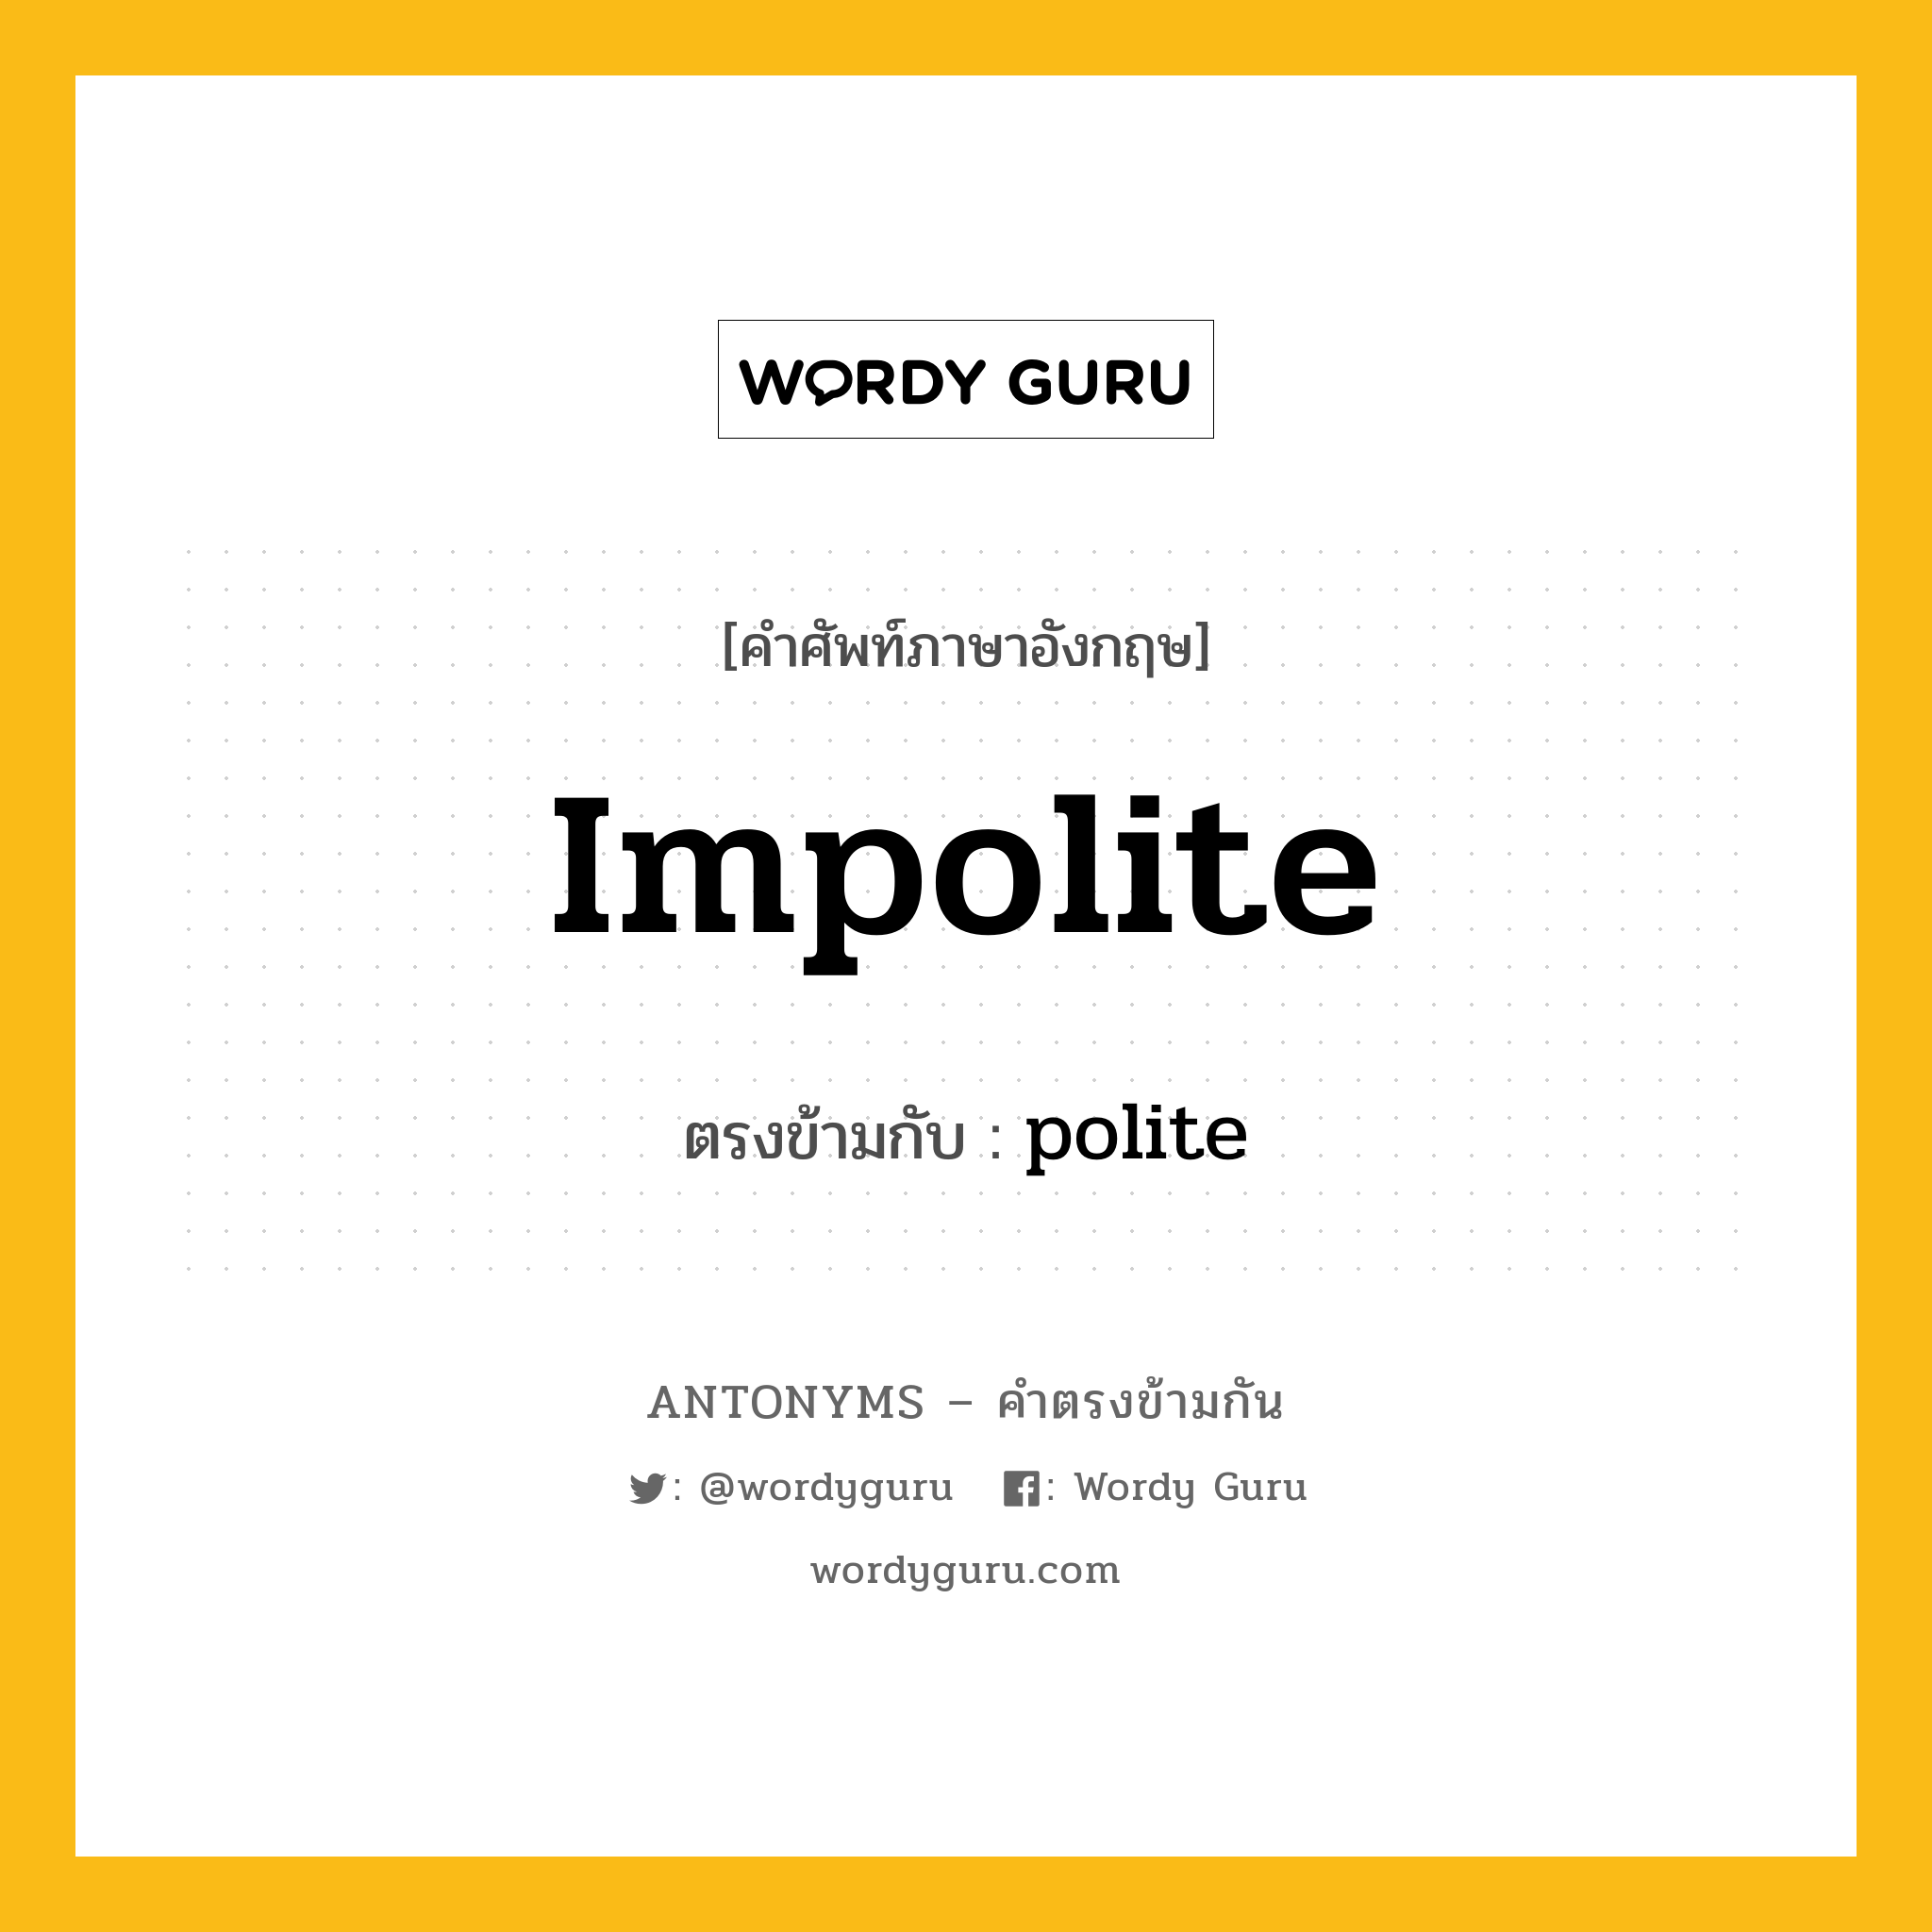 impolite เป็นคำตรงข้ามกับคำไหนบ้าง?, คำศัพท์ภาษาอังกฤษ impolite ตรงข้ามกับ polite หมวด polite